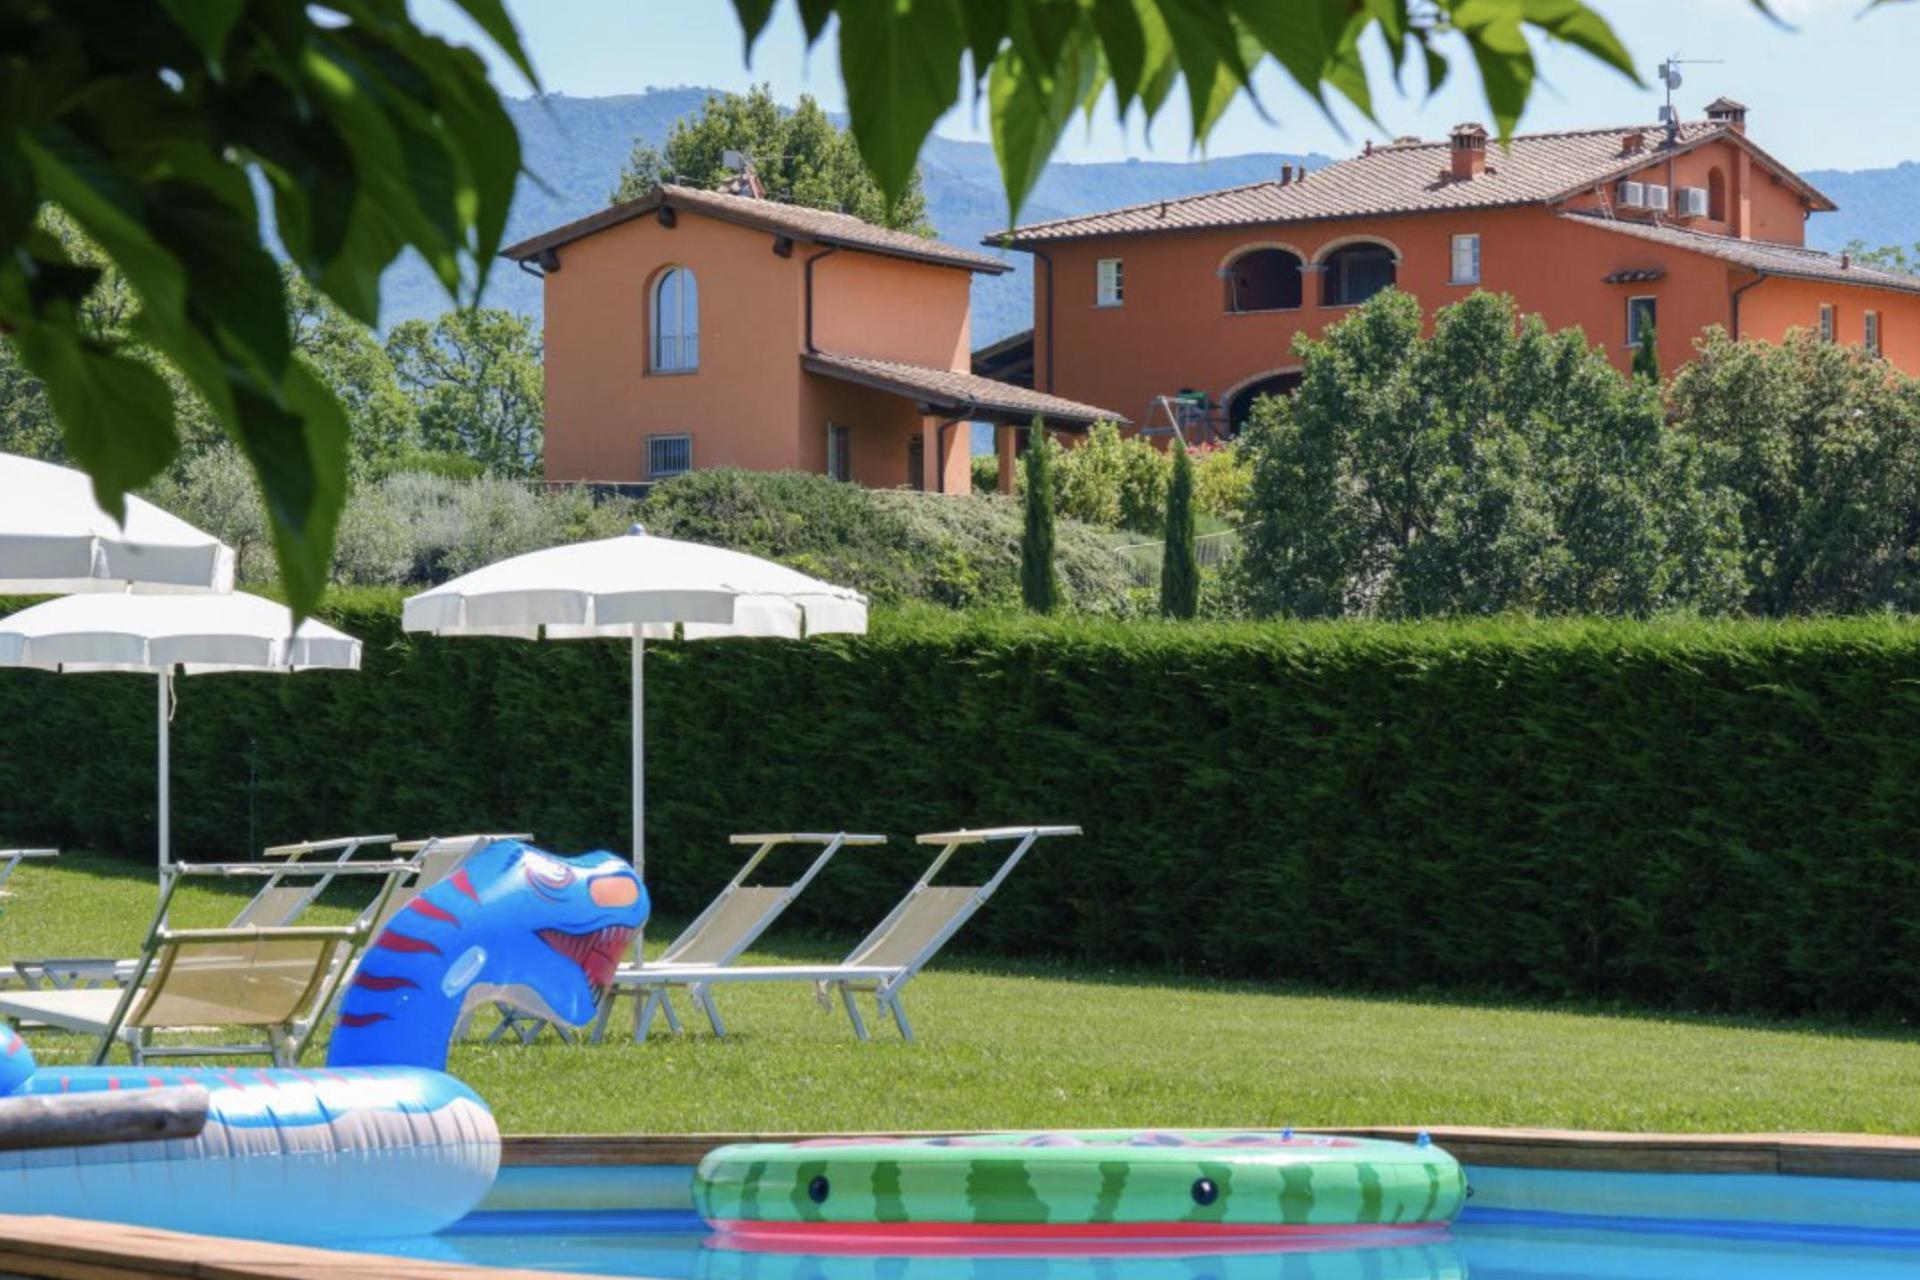 Familievriendelijke appartementen in hartje Toscane